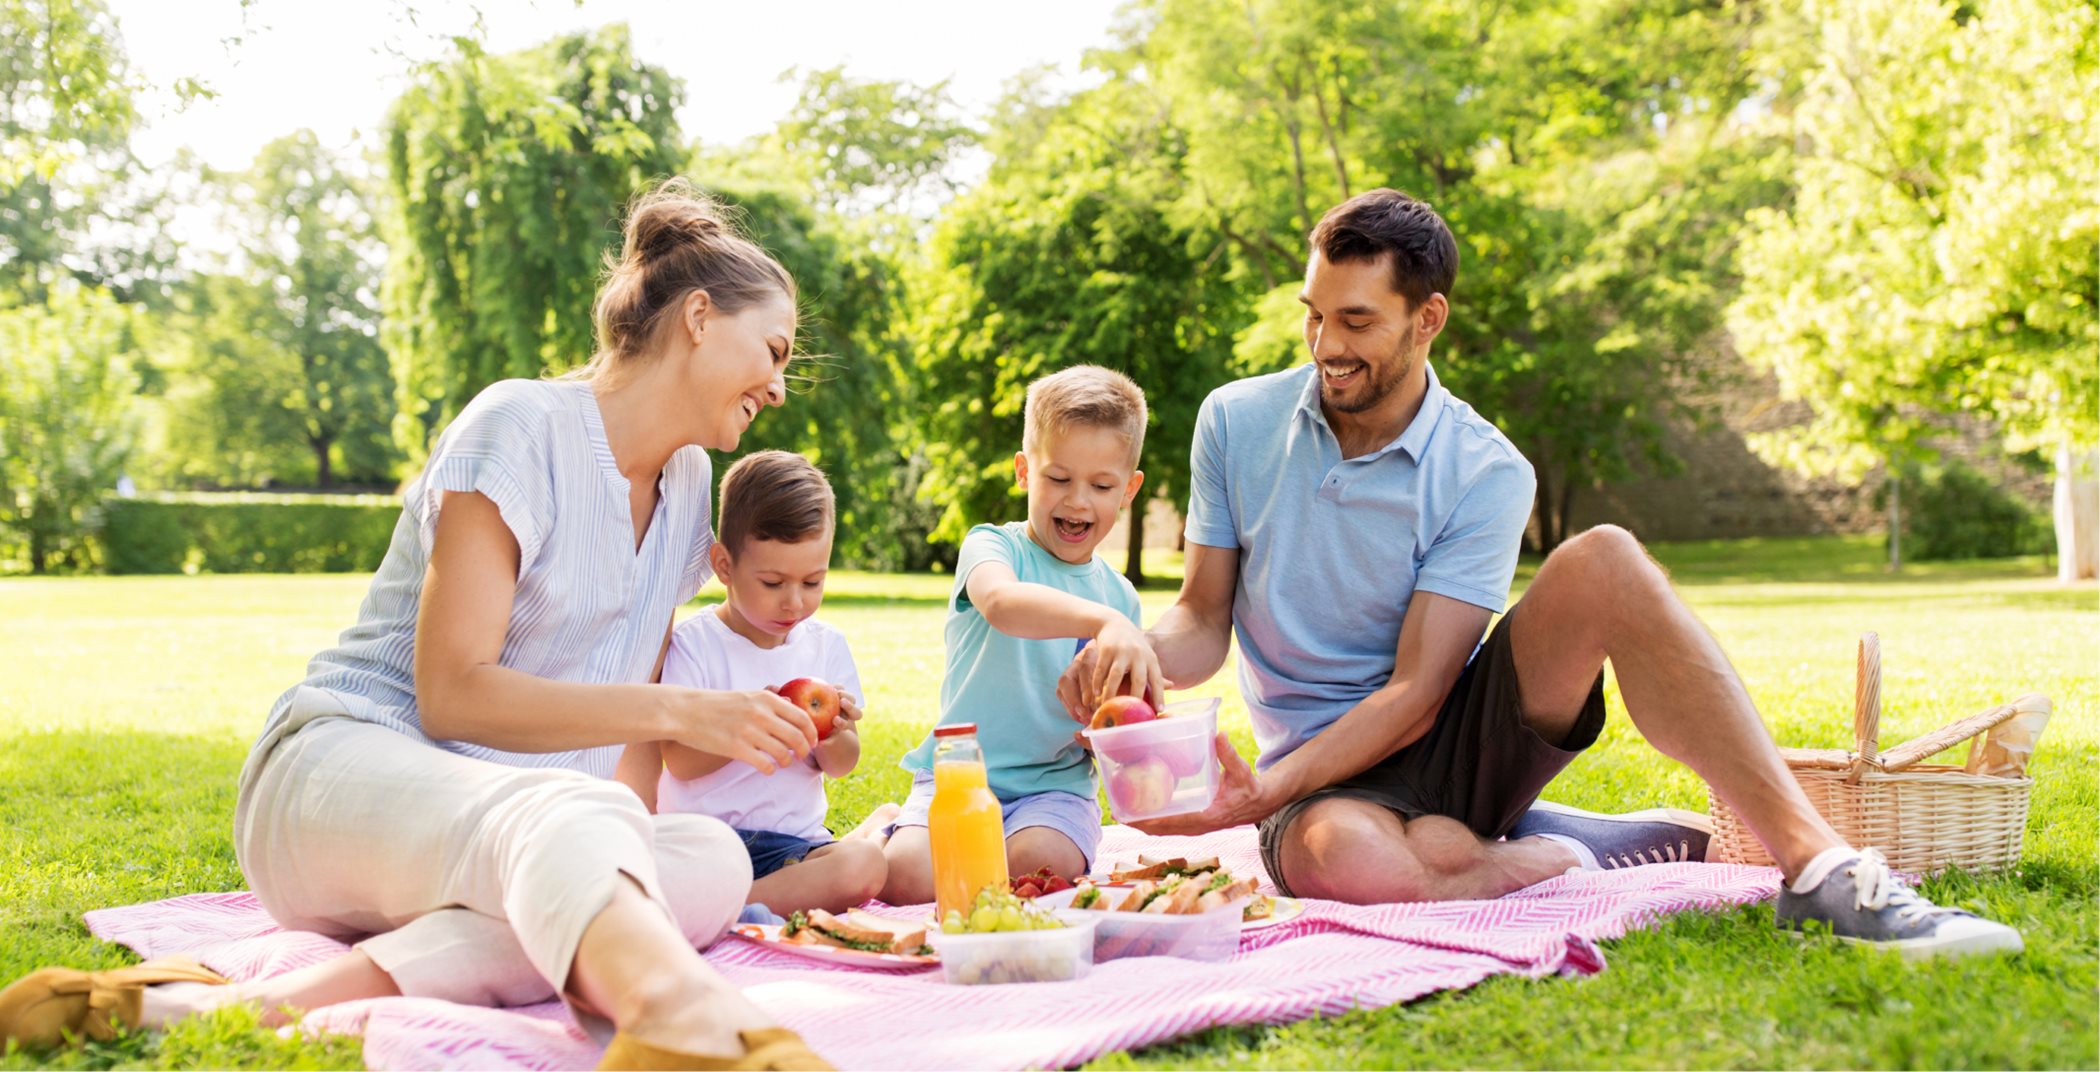 Family enjoying picnic together 